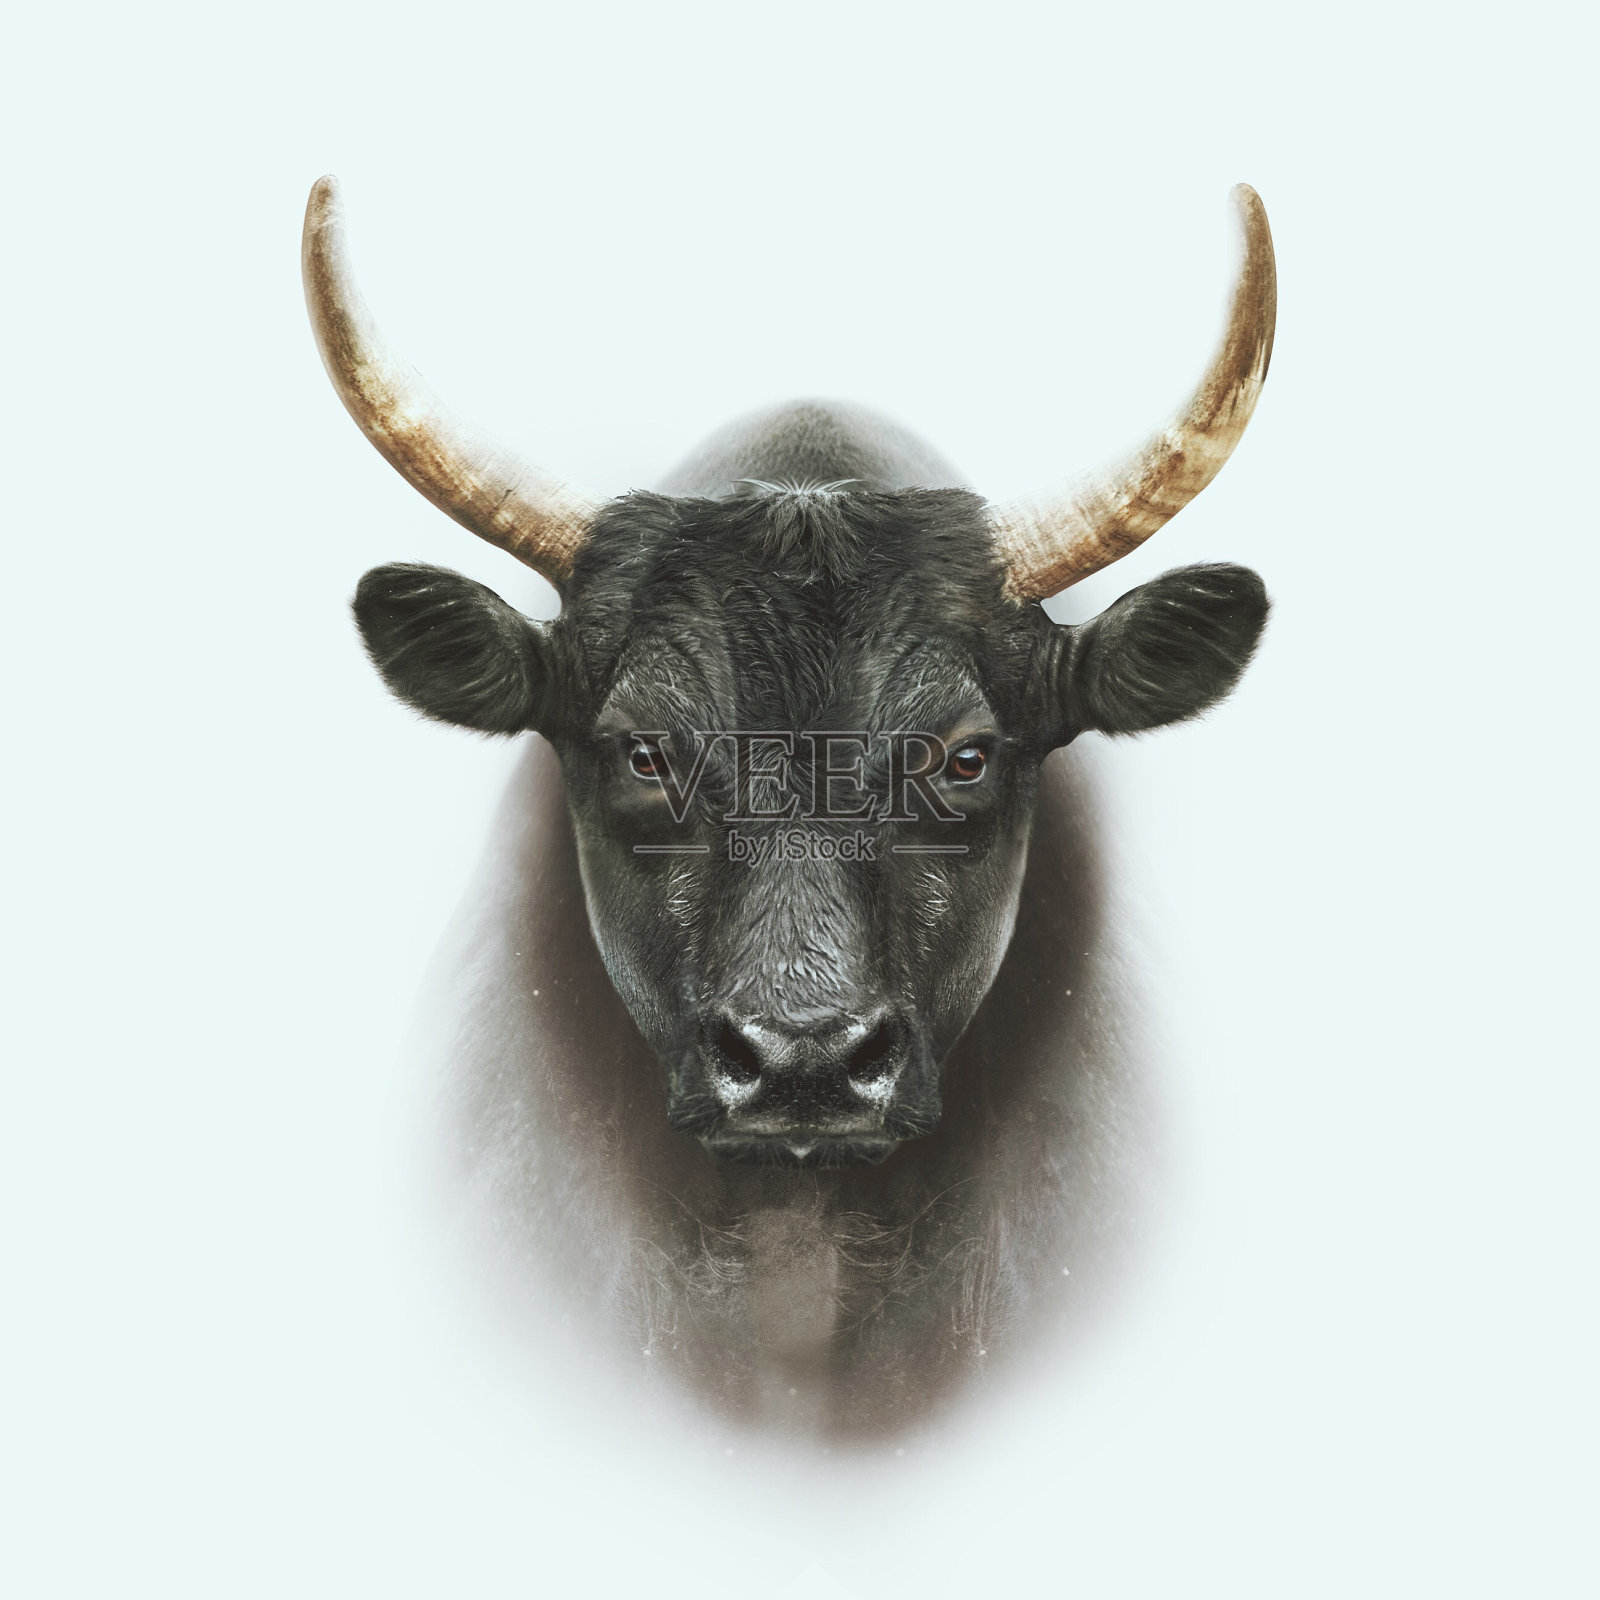 黑色camargue公牛脸肖像与双重曝光效果照片摄影图片